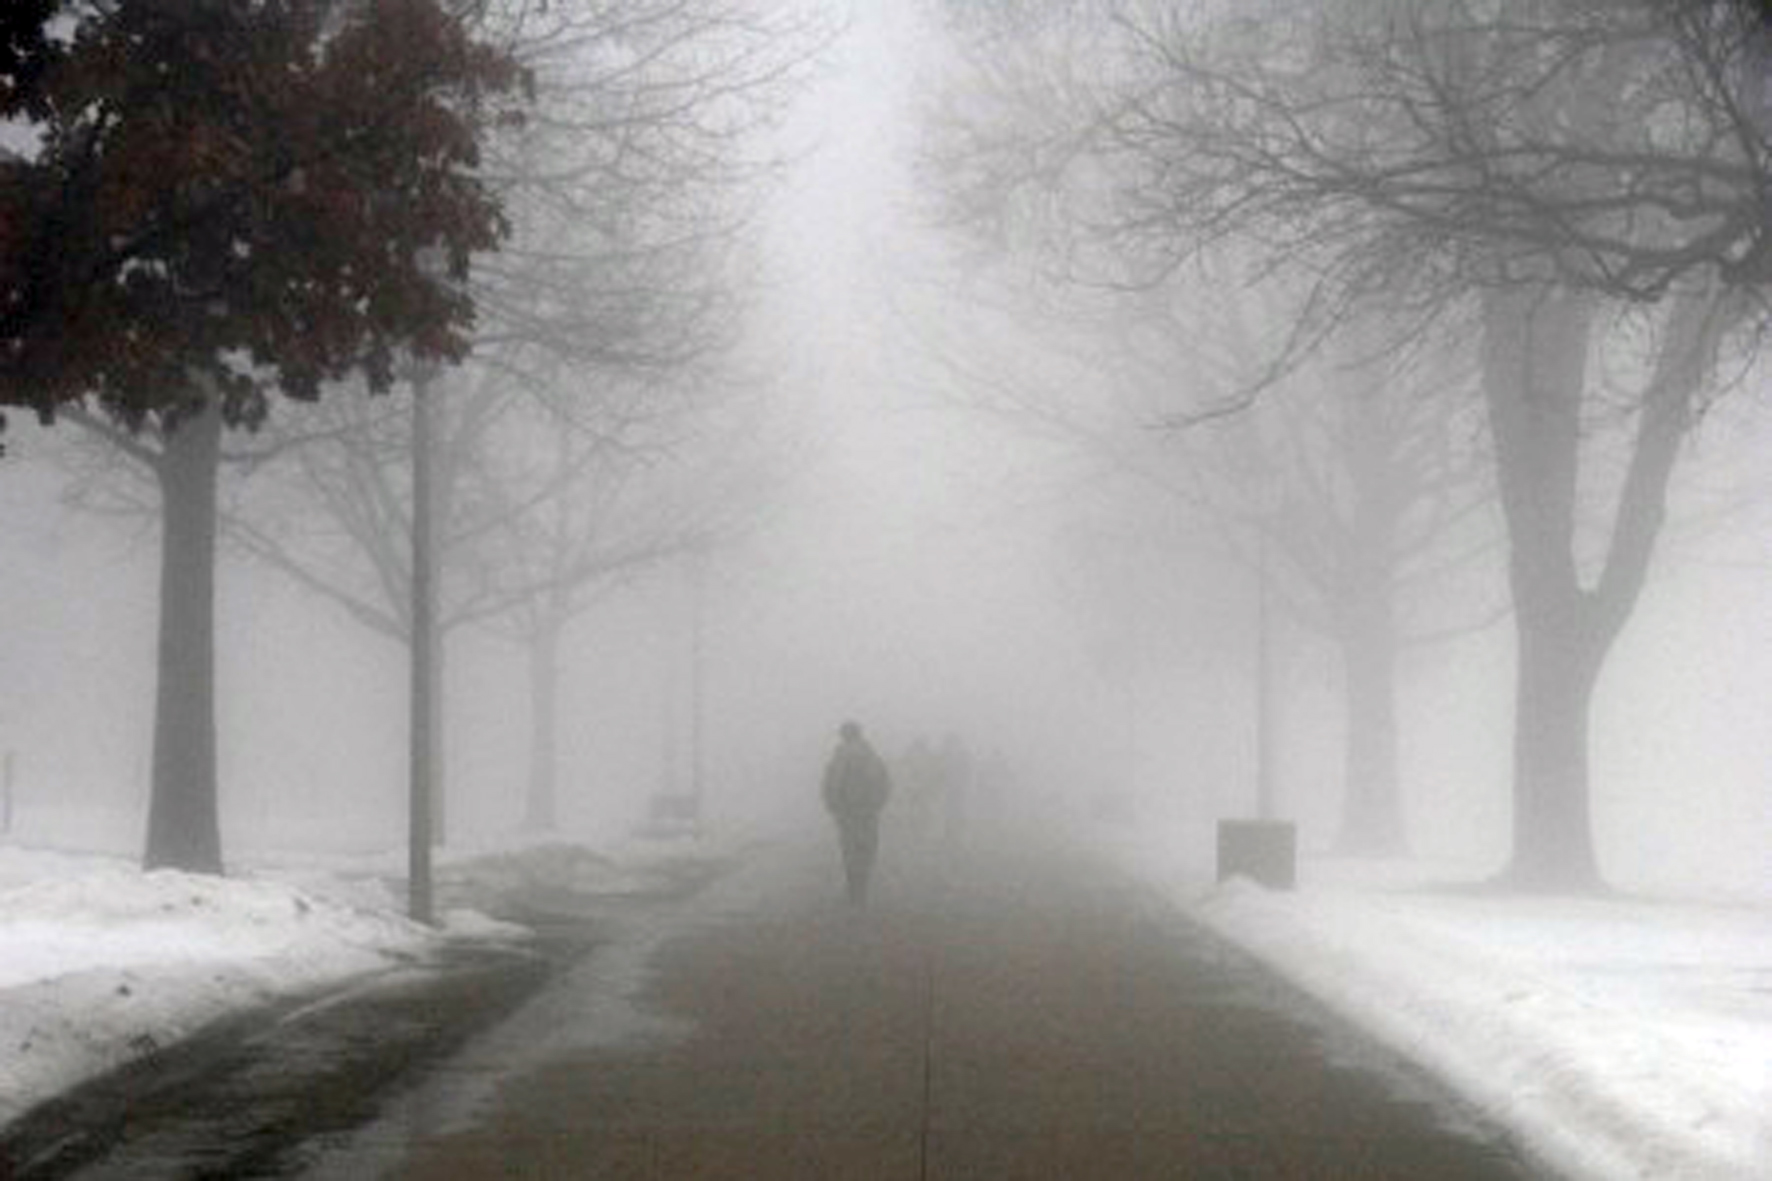 Как там живется сквозь жизни туман песня. Сильный туман. Улица в тумане. Серый день. Туман фото.